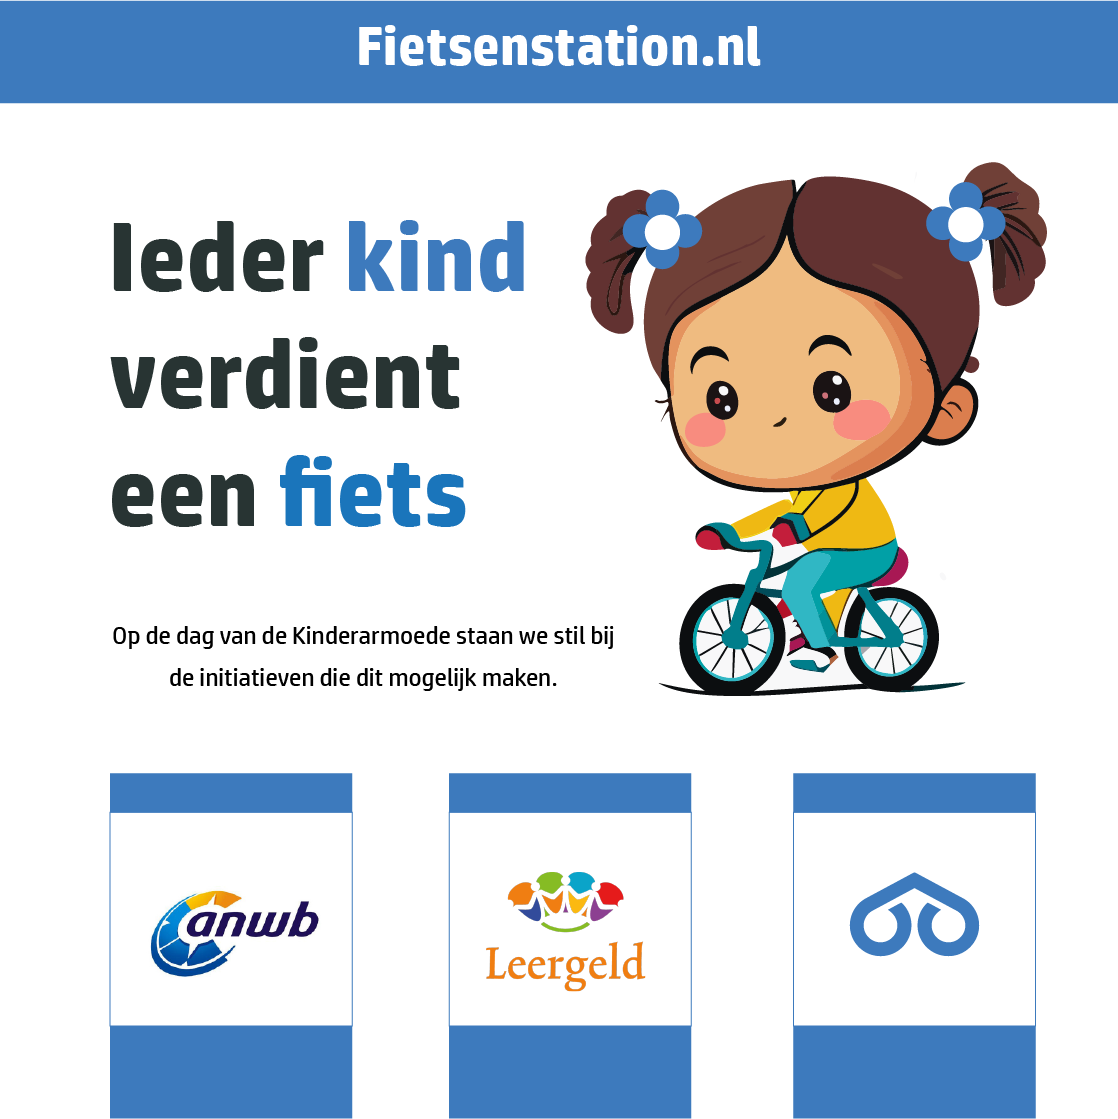 Fietsenstation, ANWB en Stichting Leergeld: Samen tegen kinderarmoede op de fiets